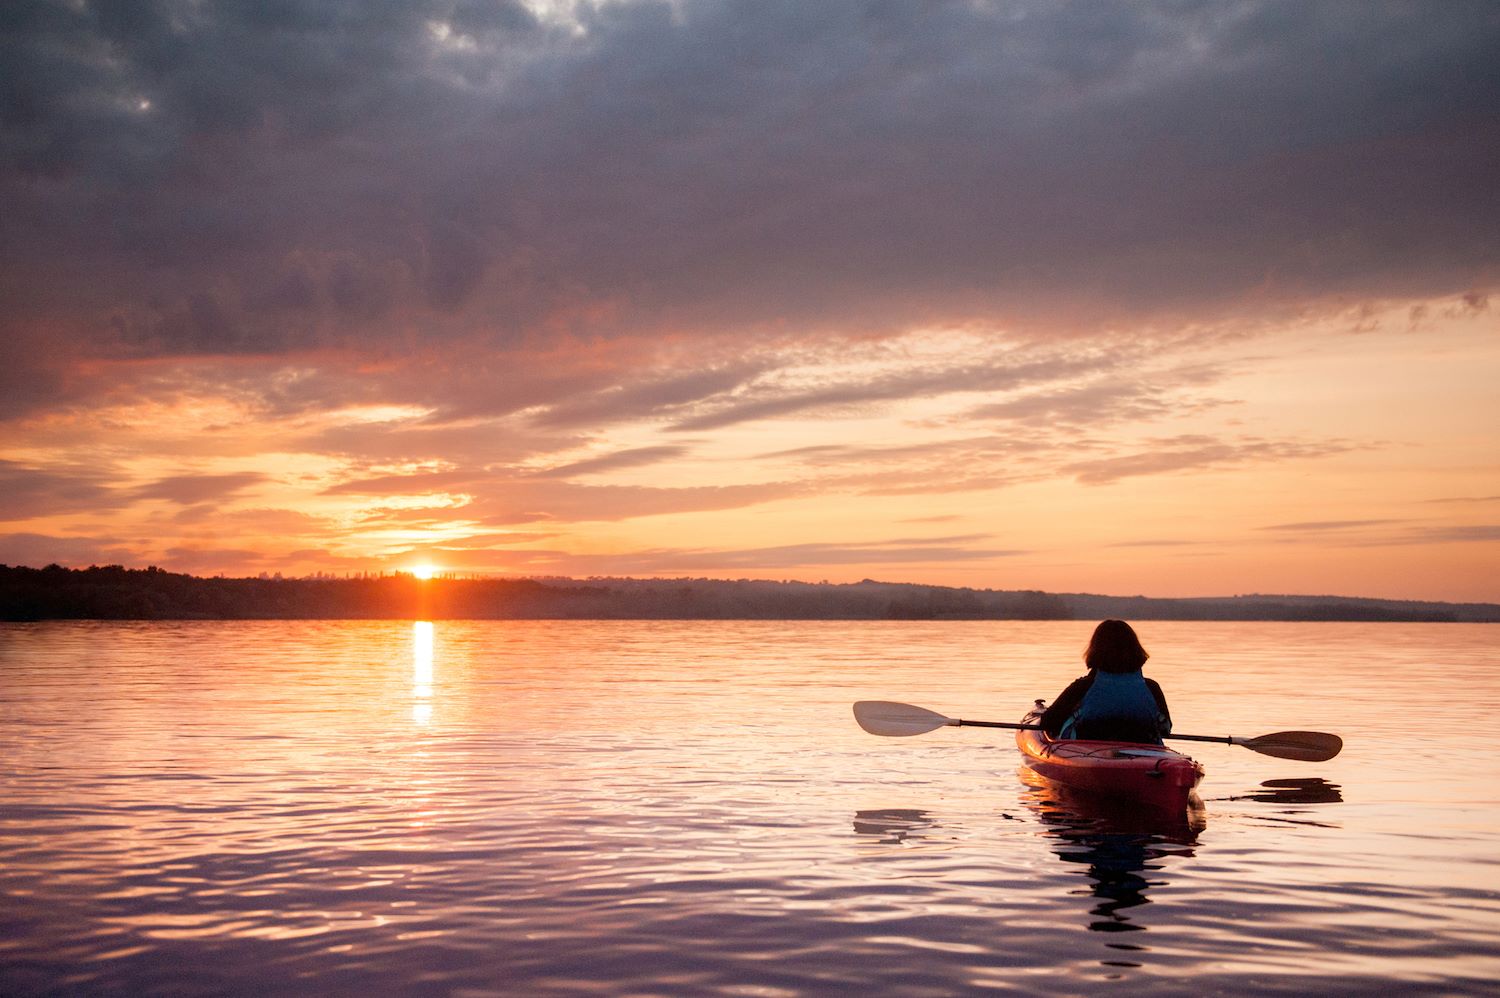 Person kayaking on a lake at sunset.